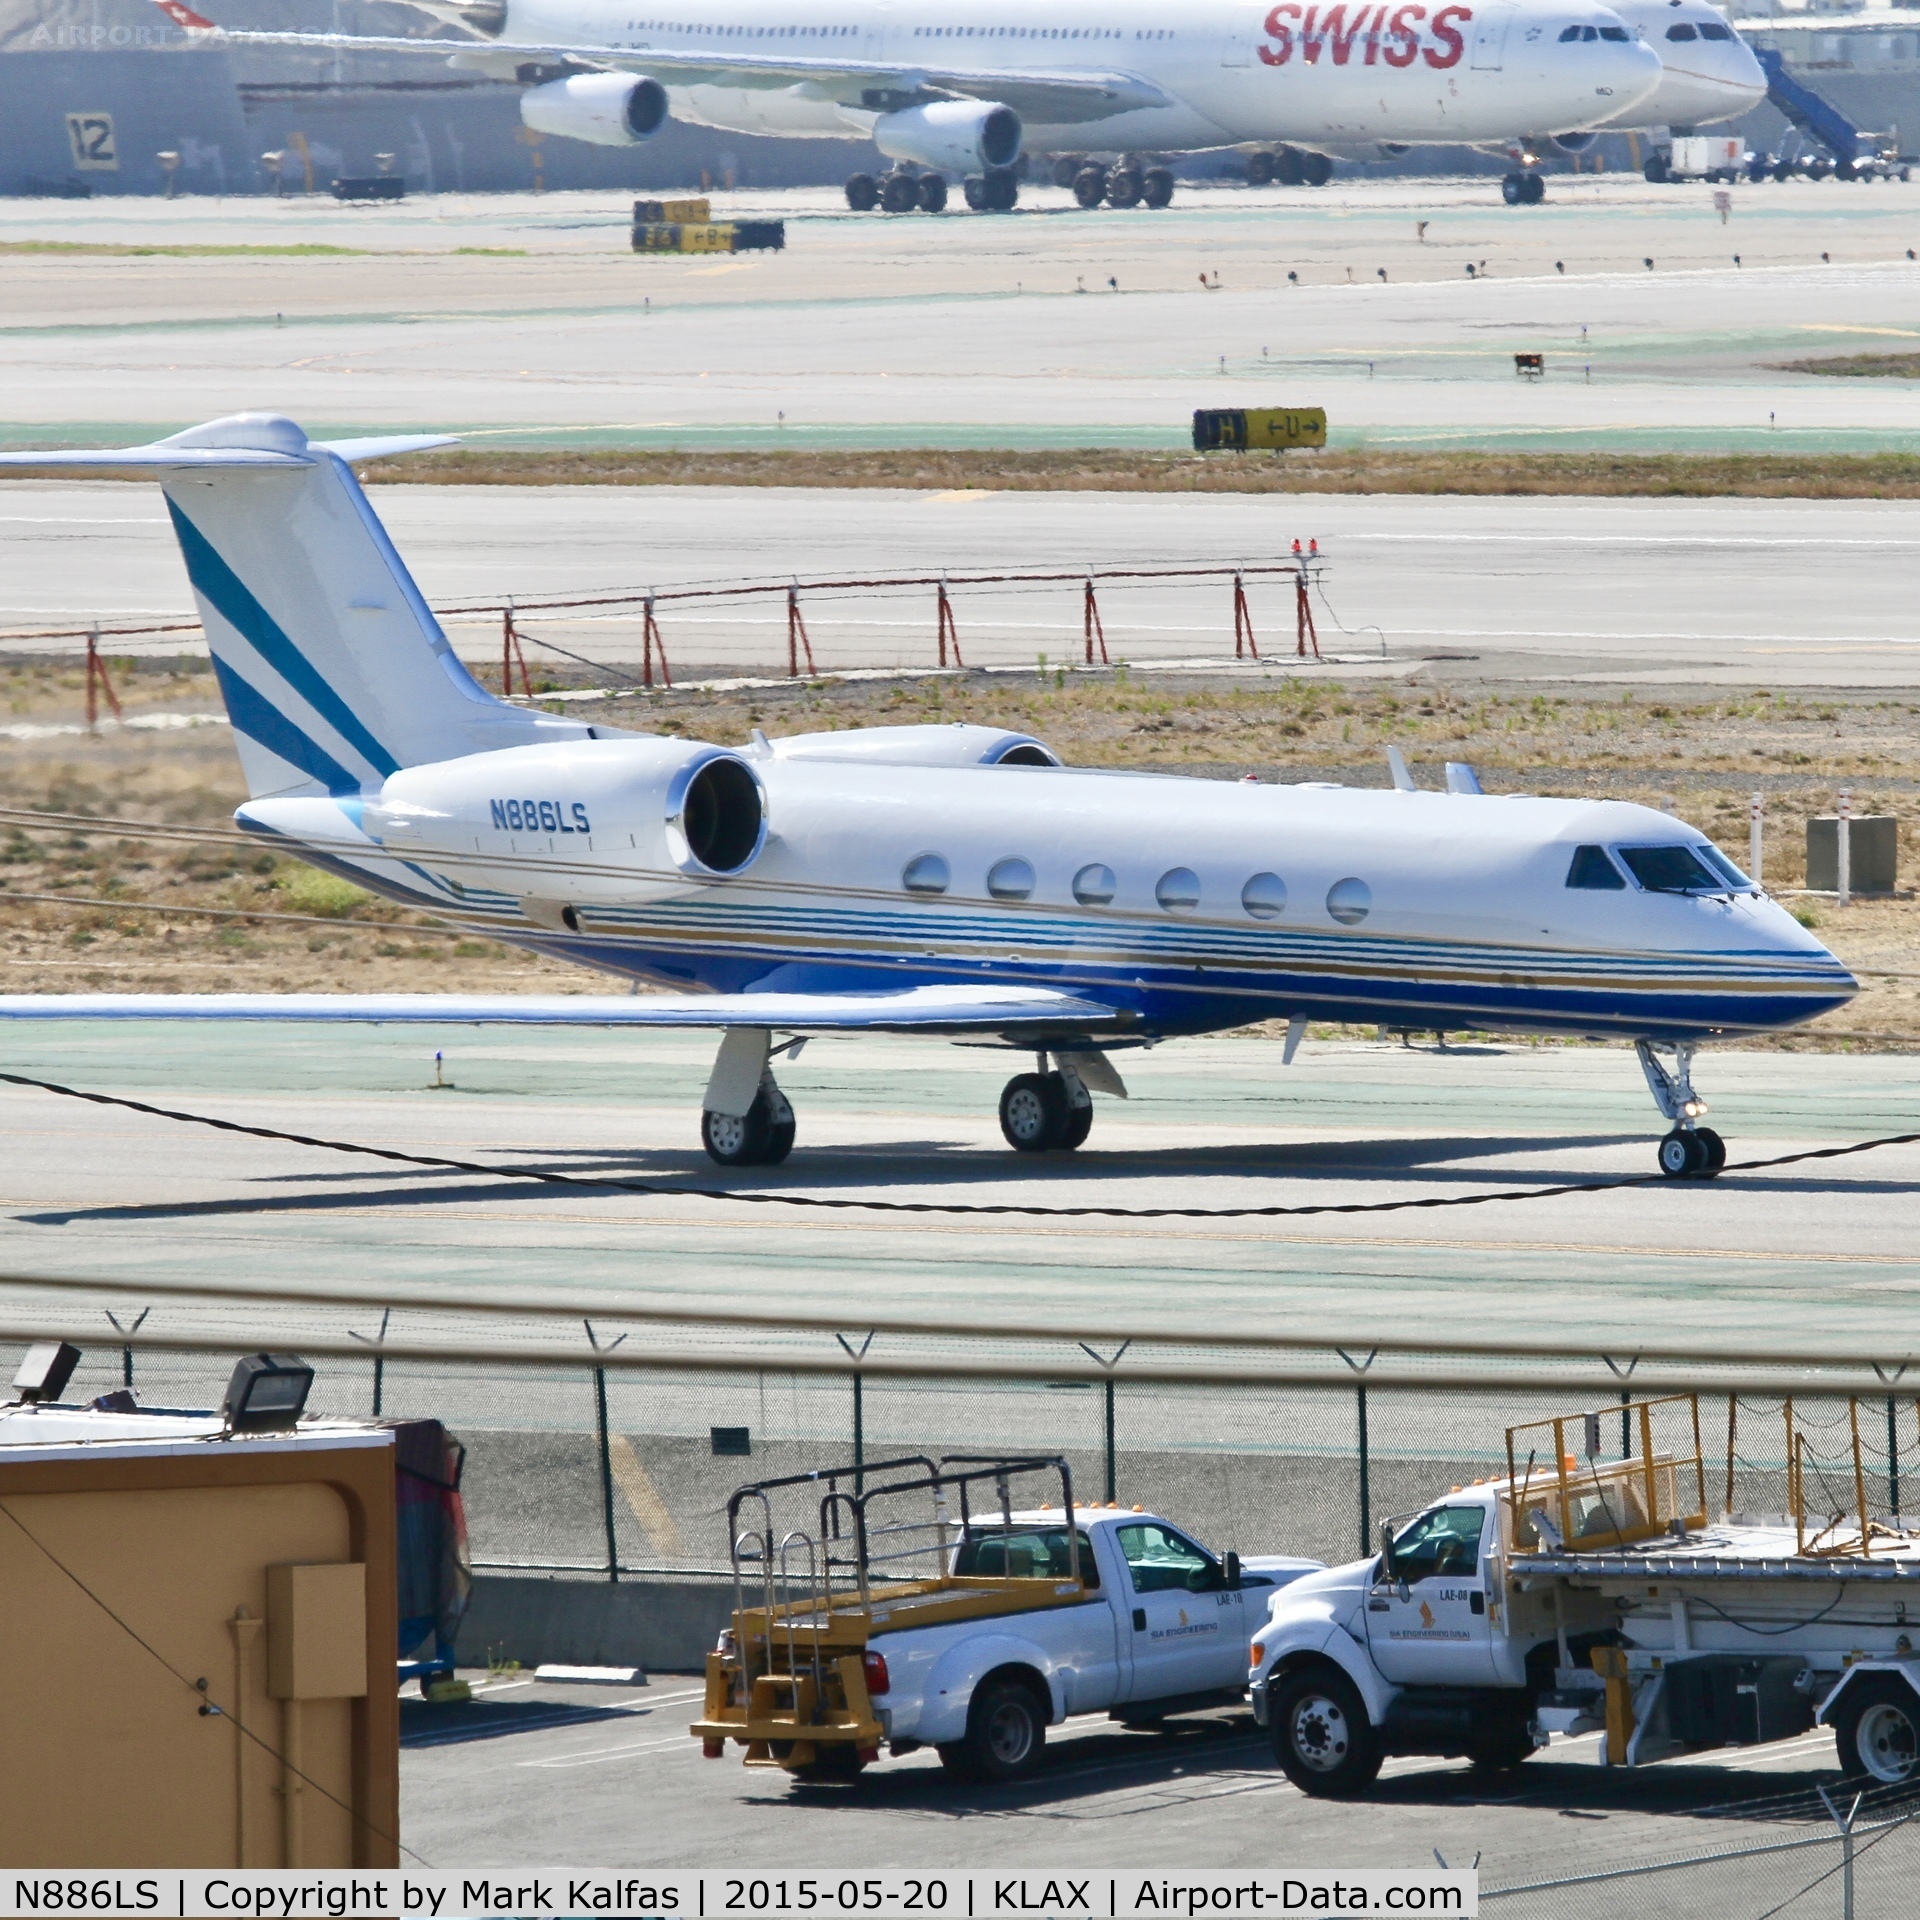 N886LS, 1998 Gulfstream Aerospace G-IV SP C/N 1341, Gulfstream, N886LS at LAX